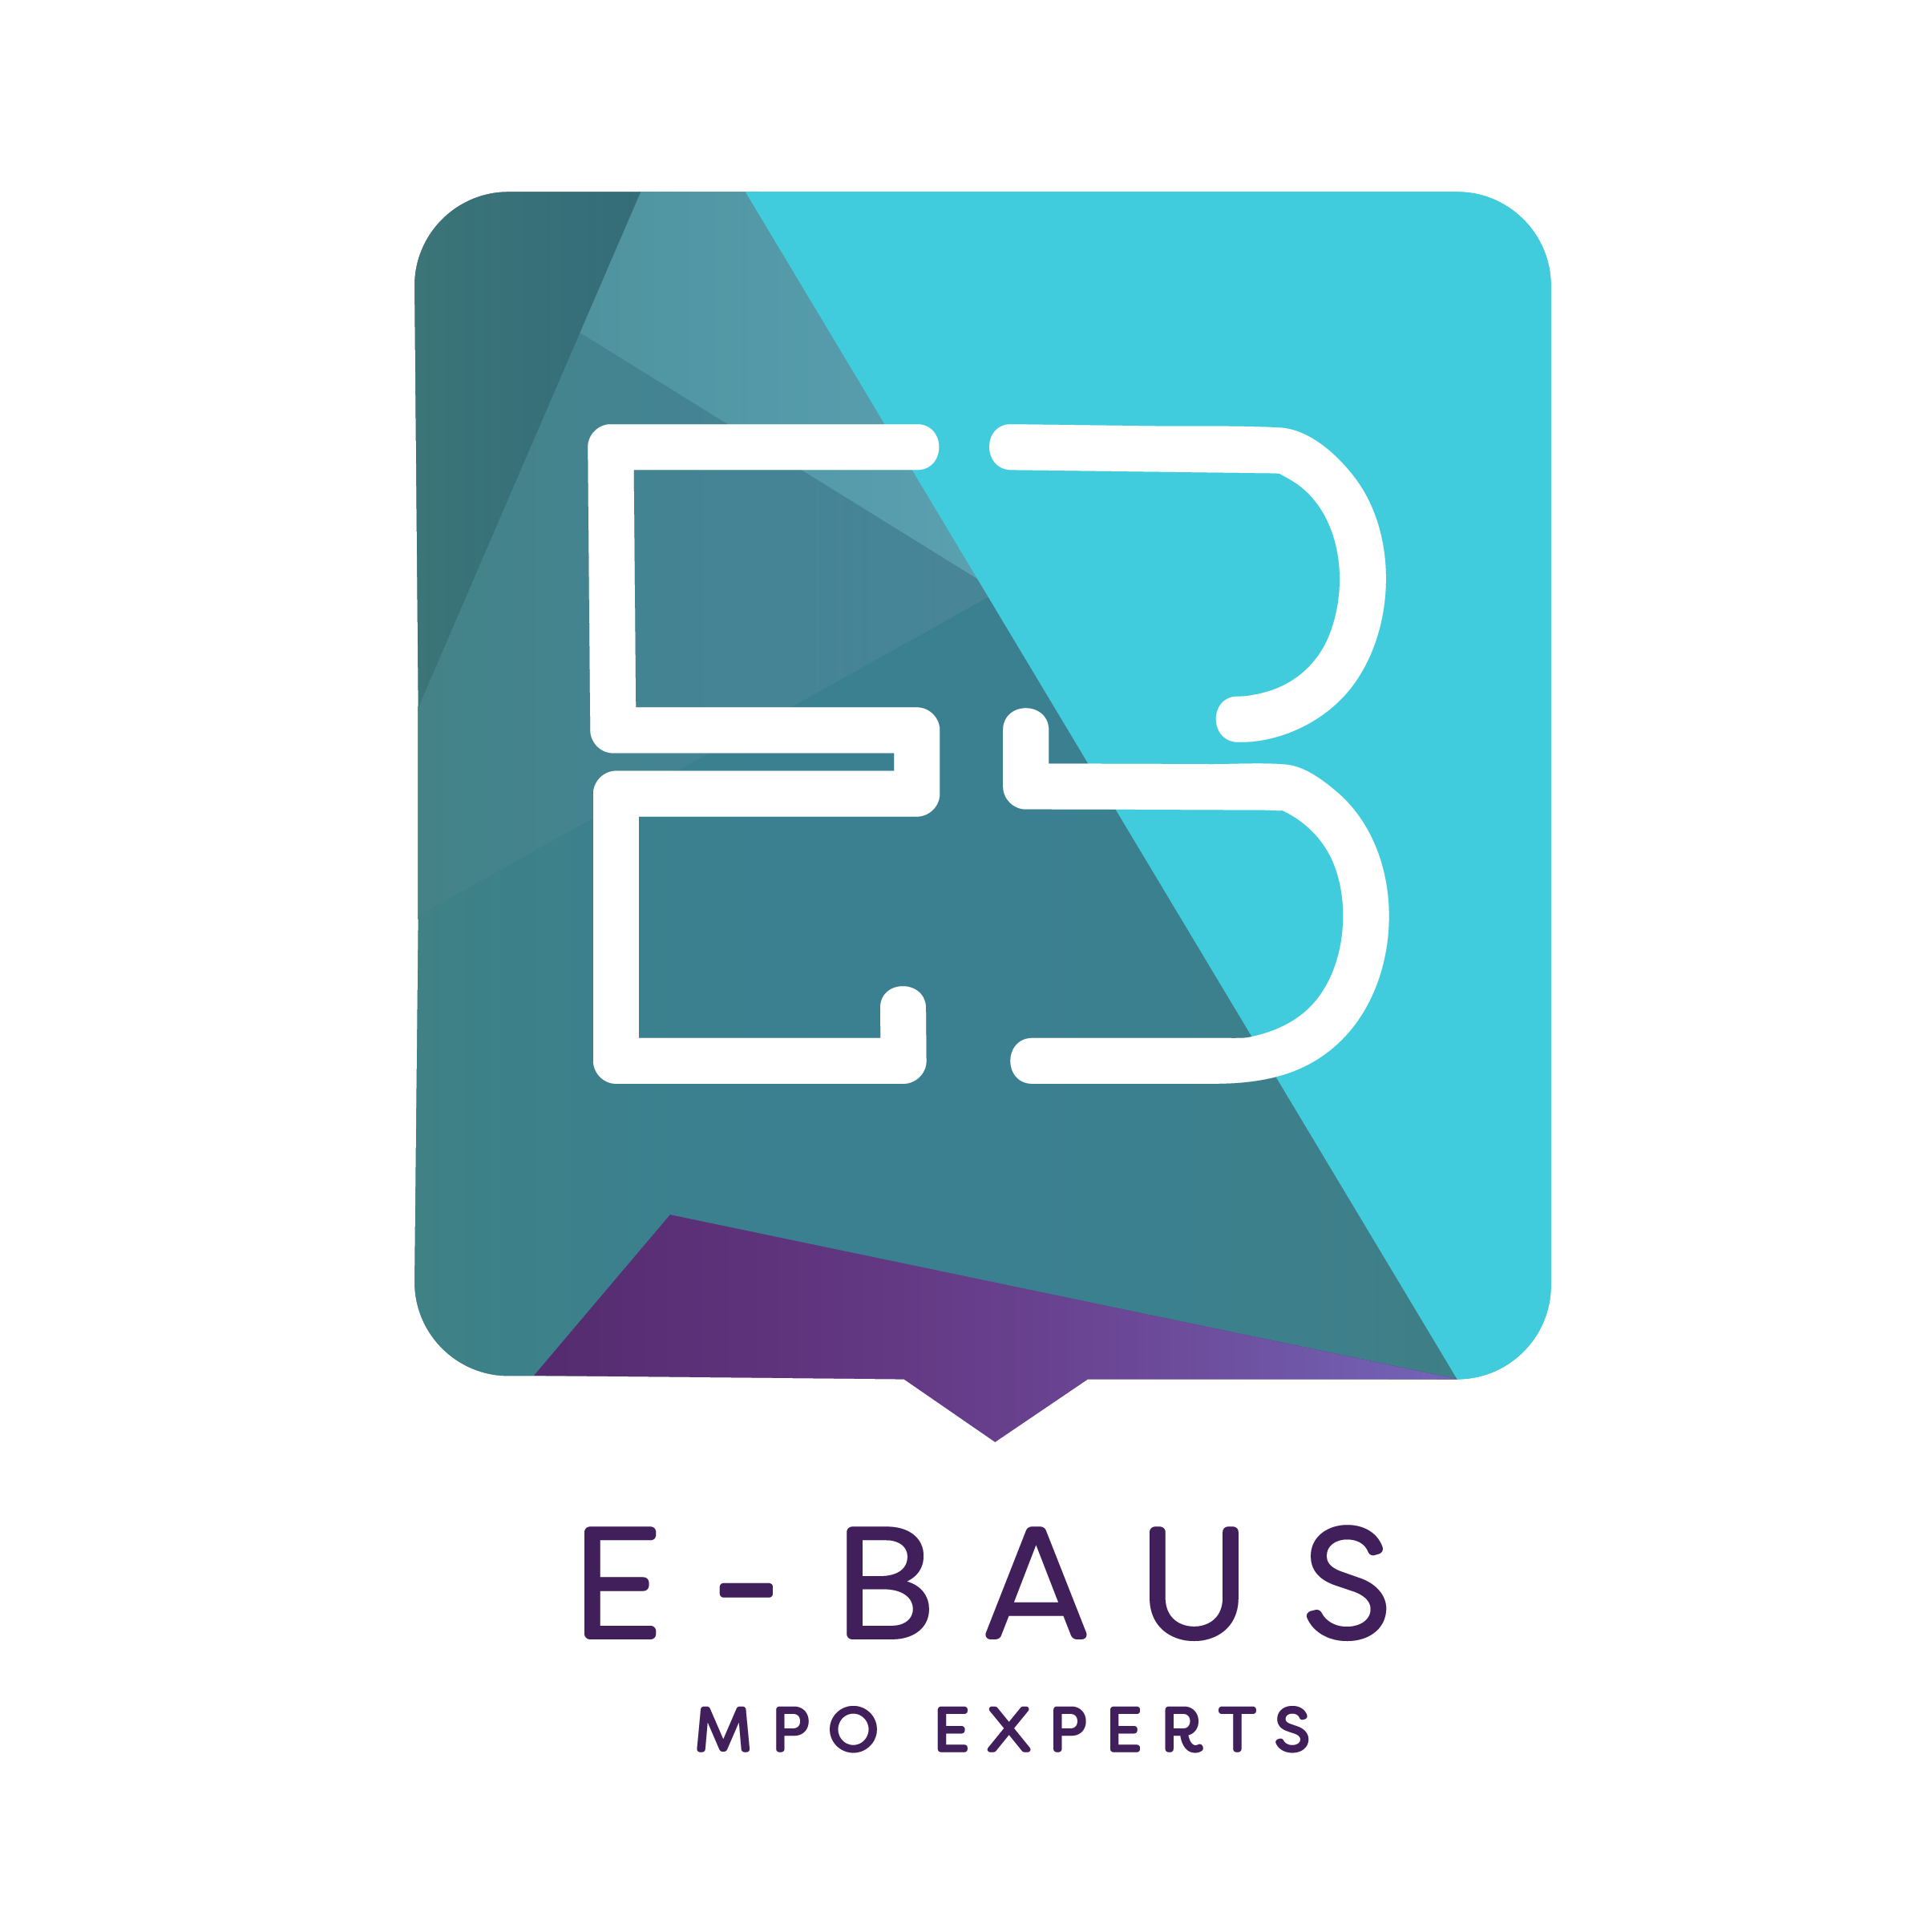 E-BAUS GmbH